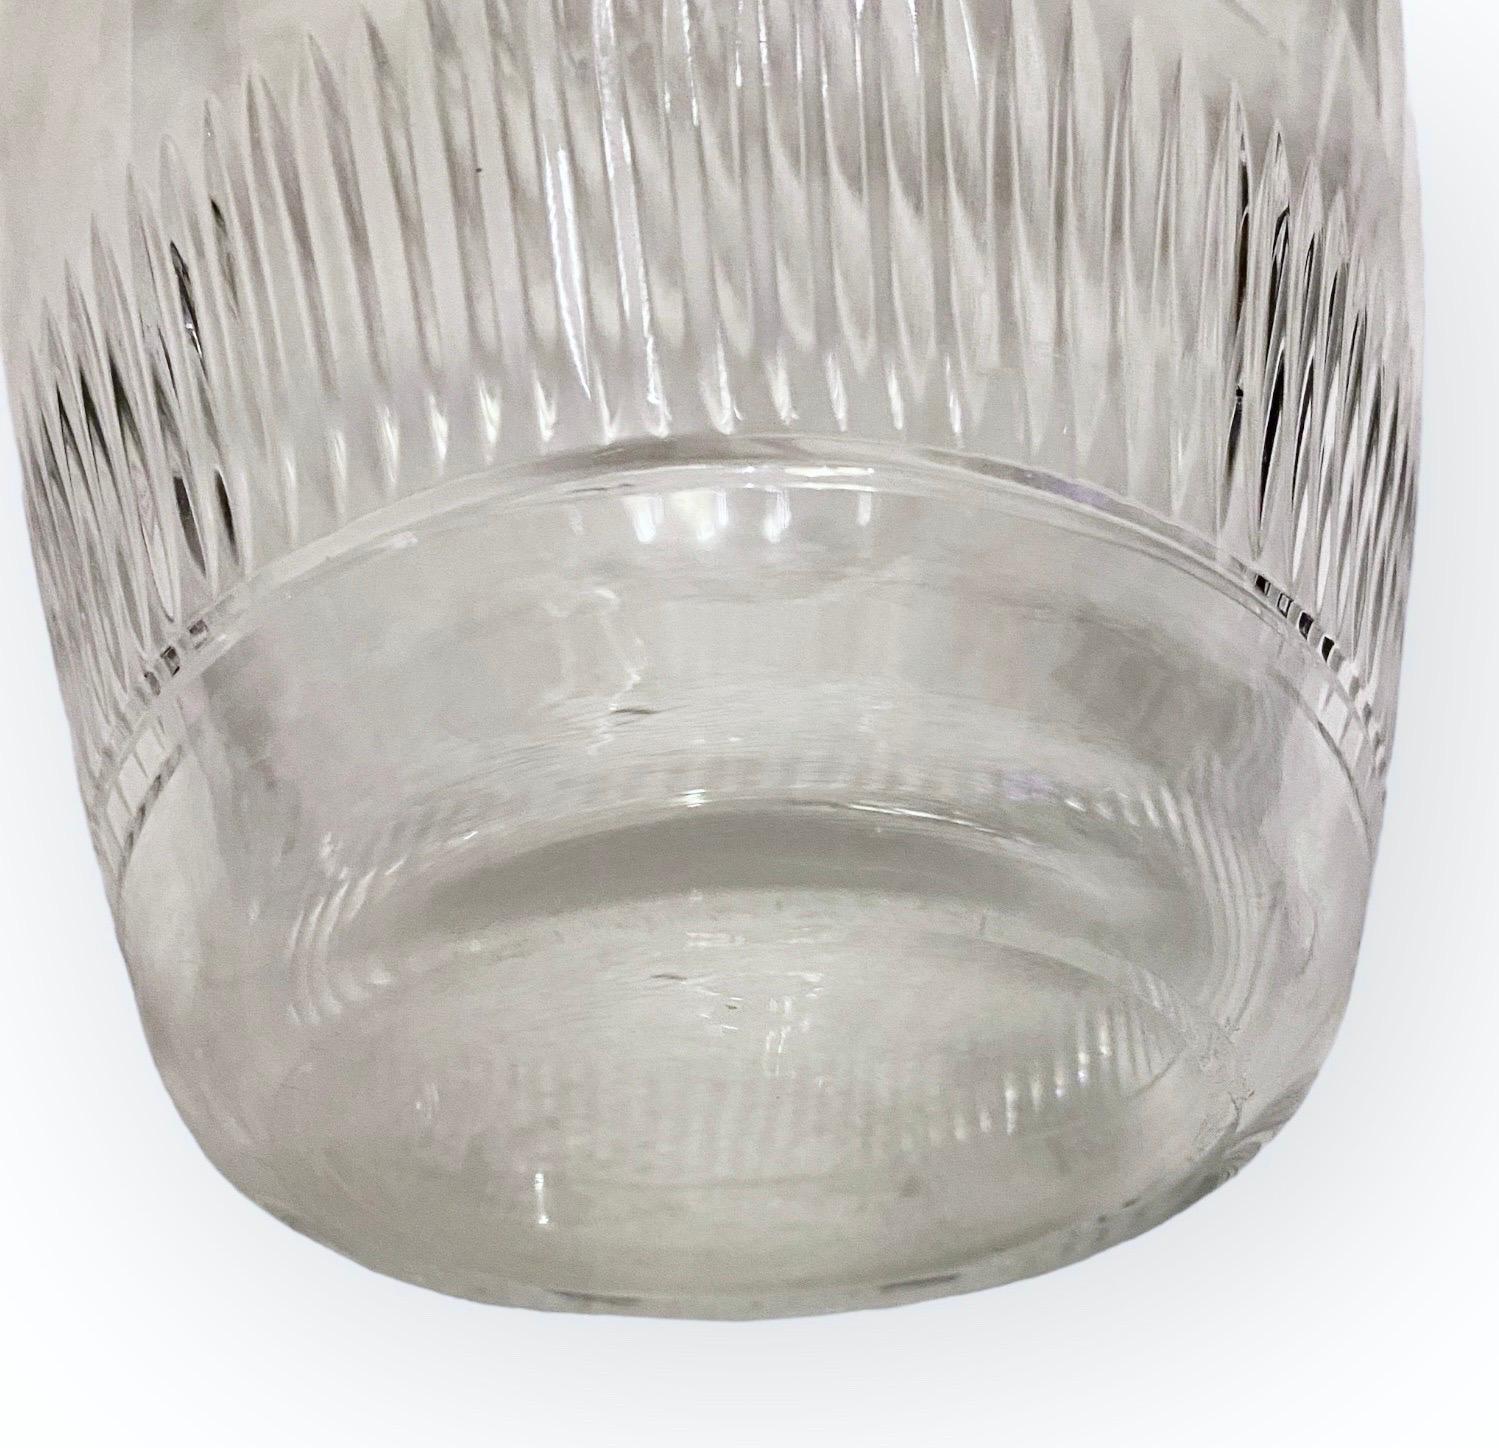 Une ancienne carafe française en verre finement taillé à la main avec un bouchon facetté à la main, ainsi que quatre verres à liqueur moulés provenant d'un bistro français d'avant-guerre (à l'époque 